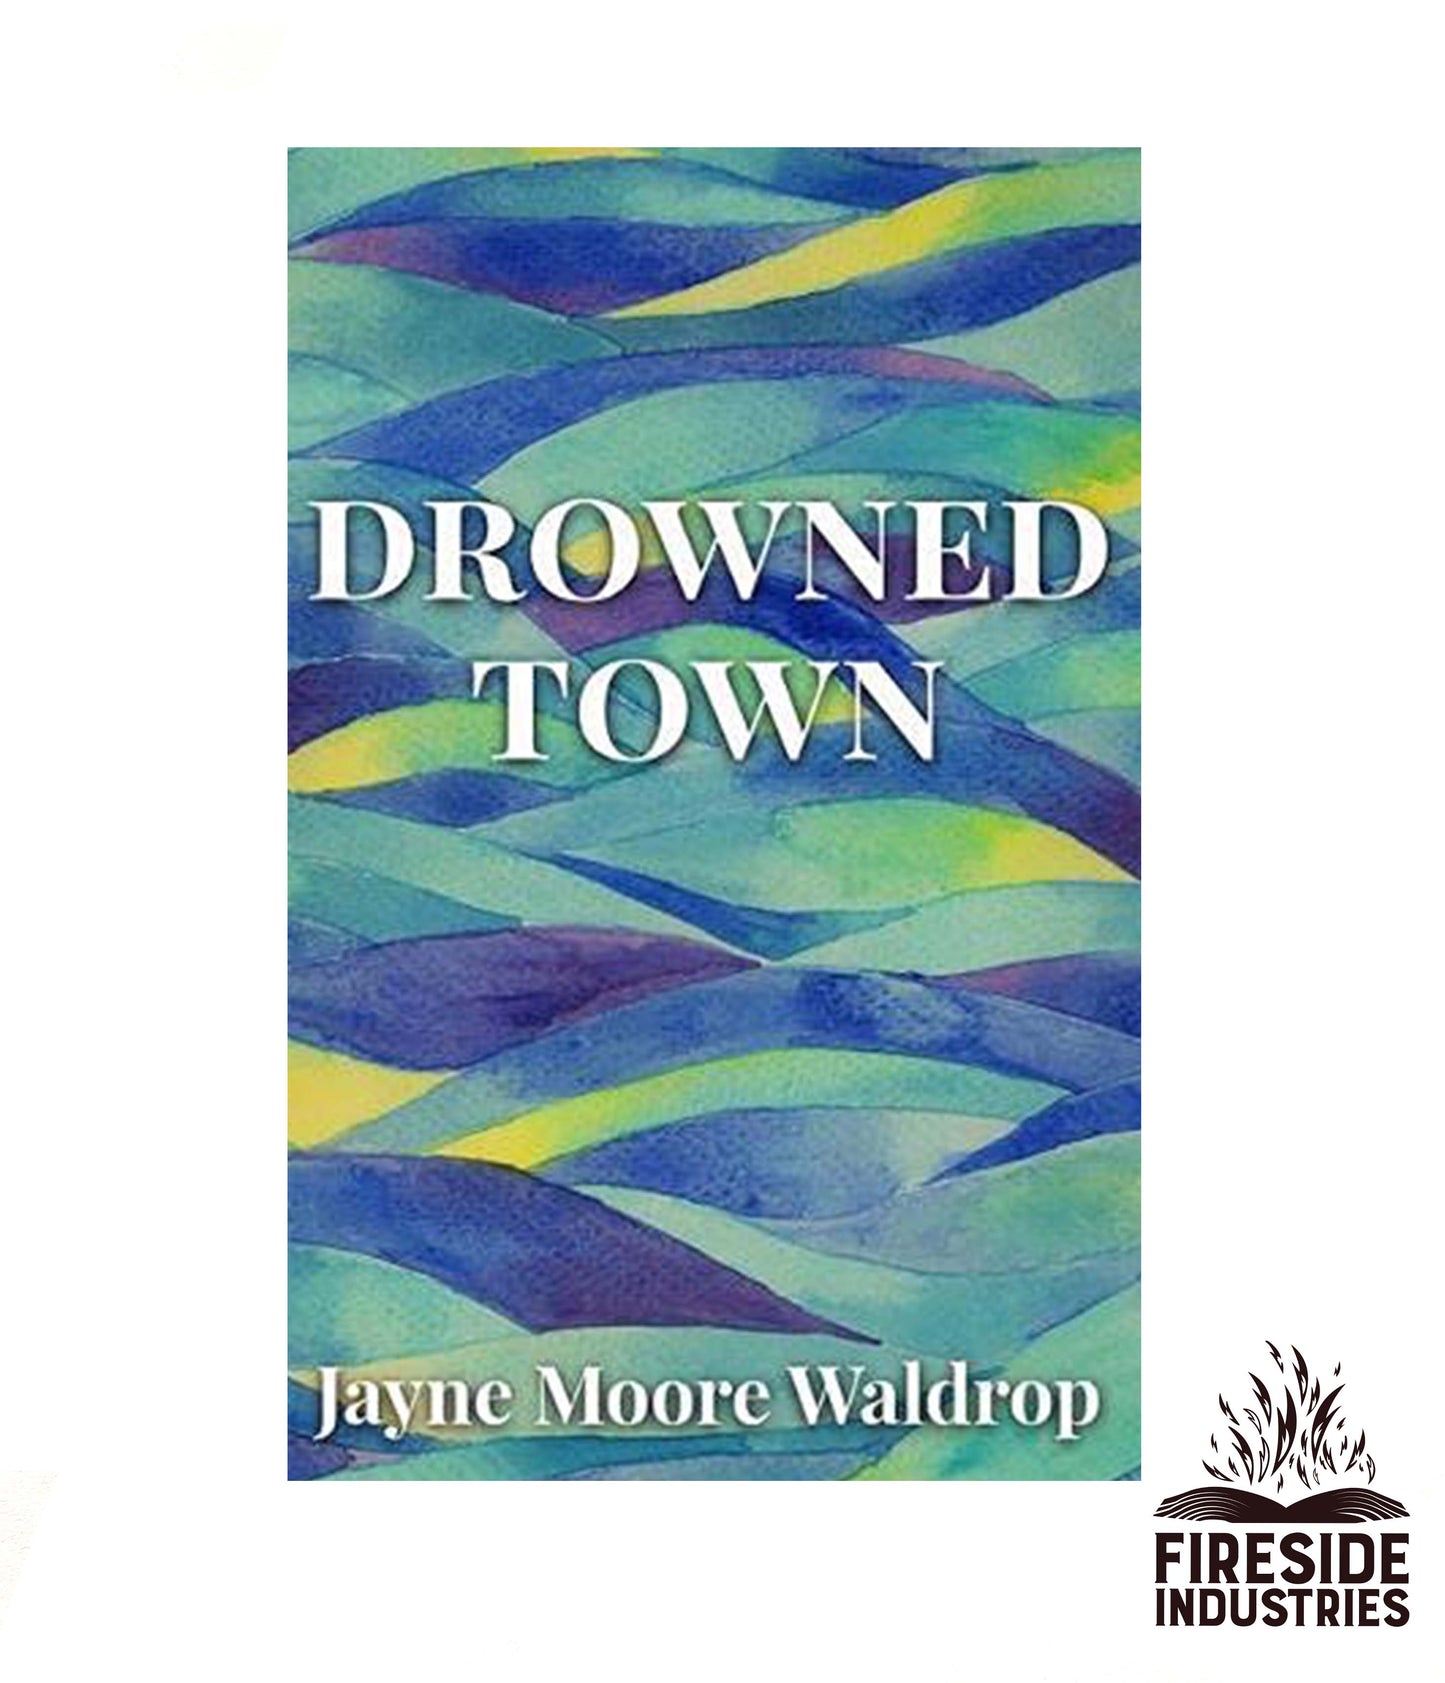 Drowned Town by Jayne Moore Waldrop